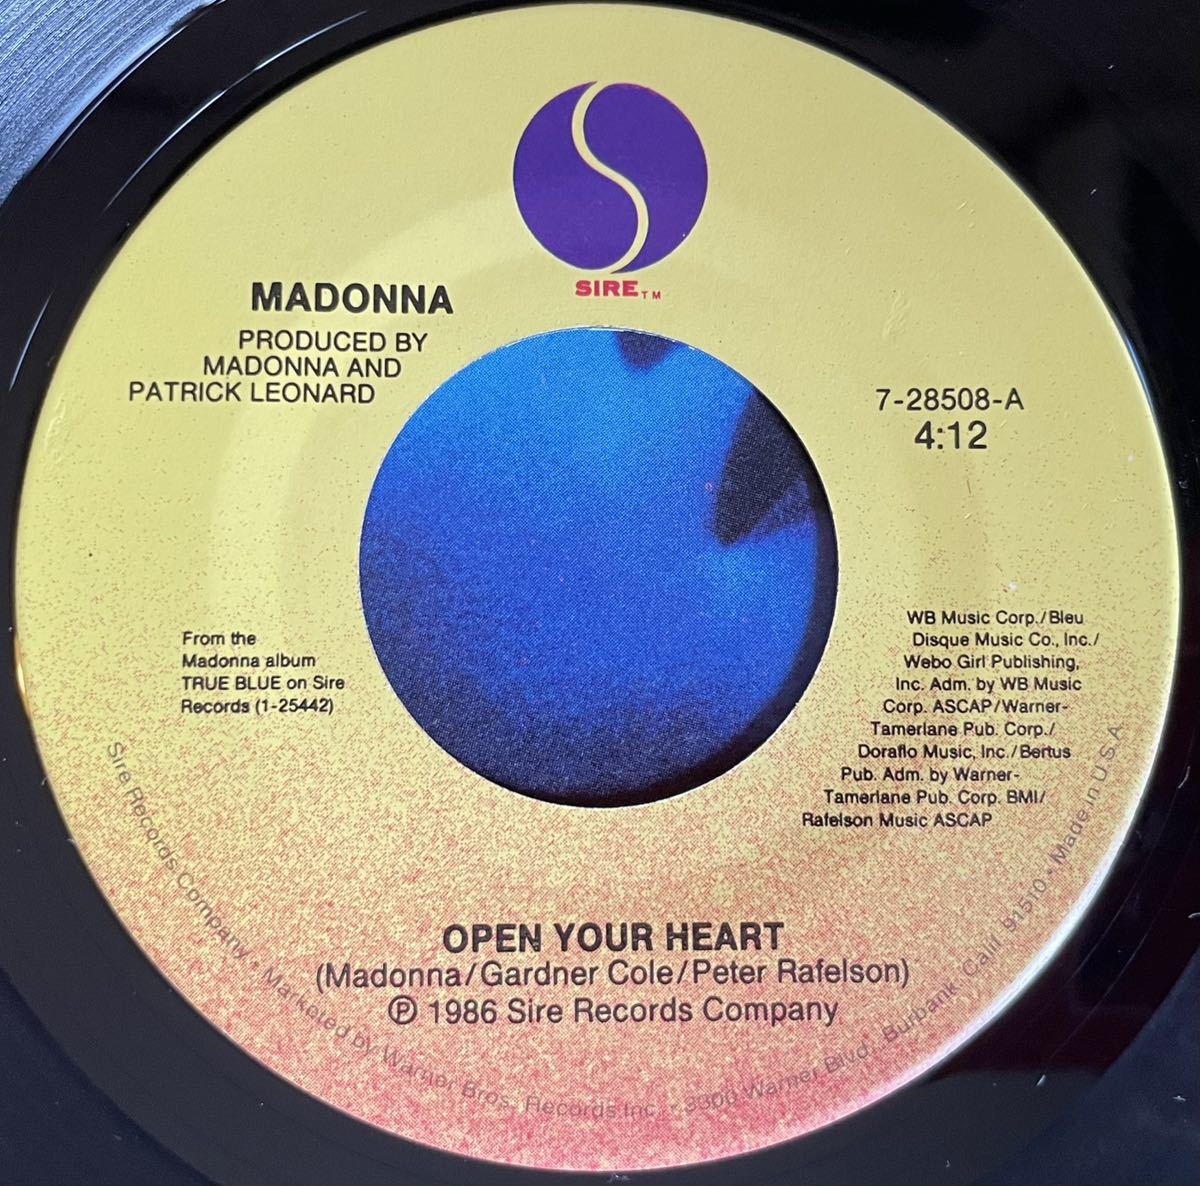 EP盤 Madonna / Open Your Heart US盤 オリジナル7インチ盤その他プロモーション盤 レア盤 人気レコード 多数出品。_画像2